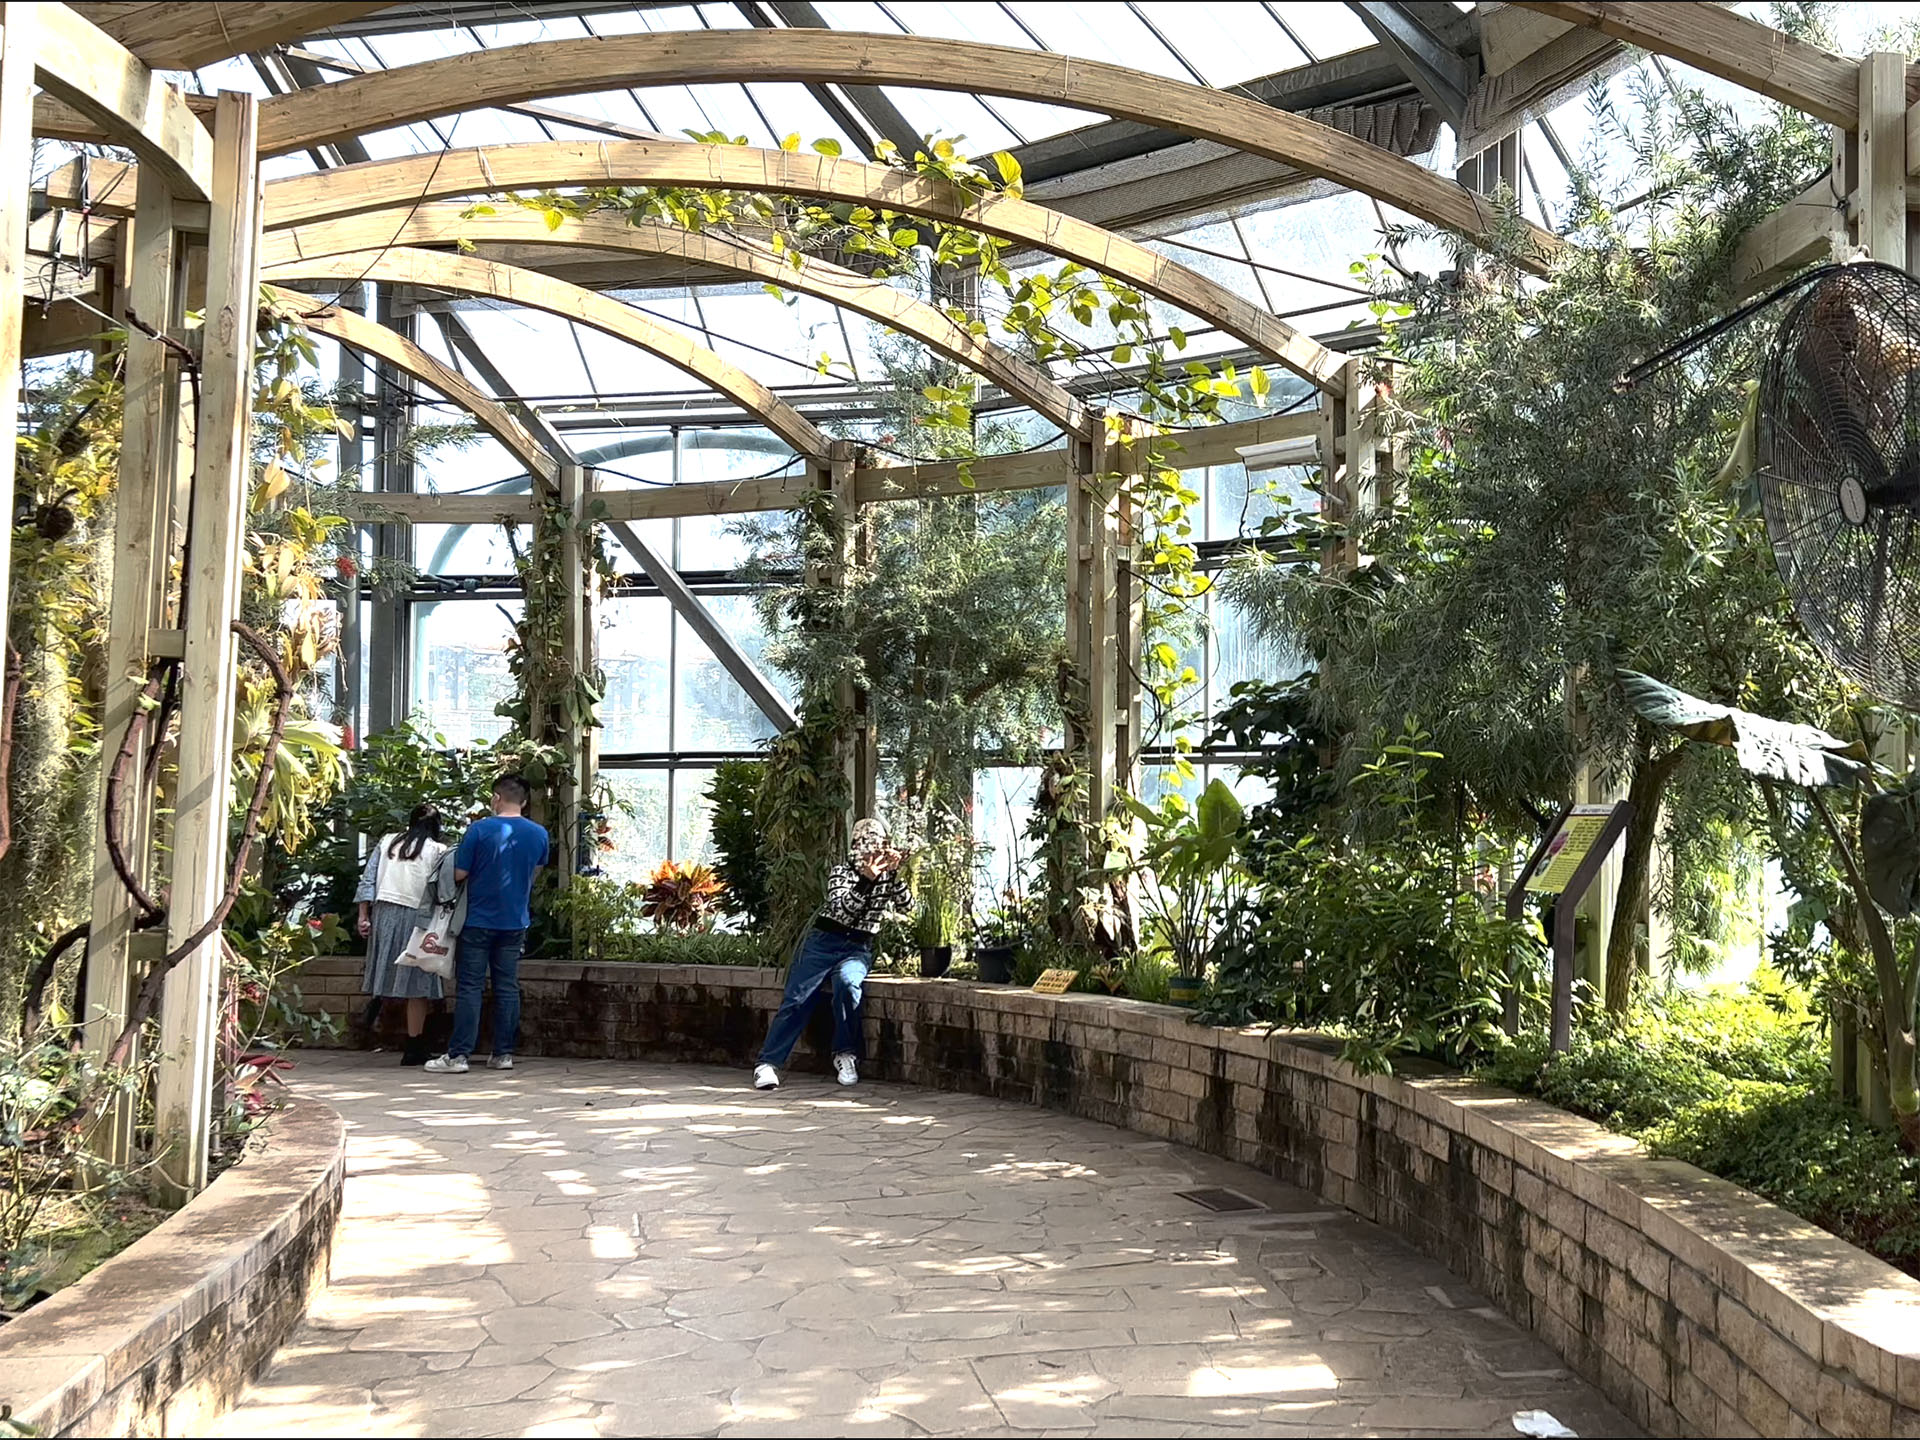 Cactus in Greenhouse